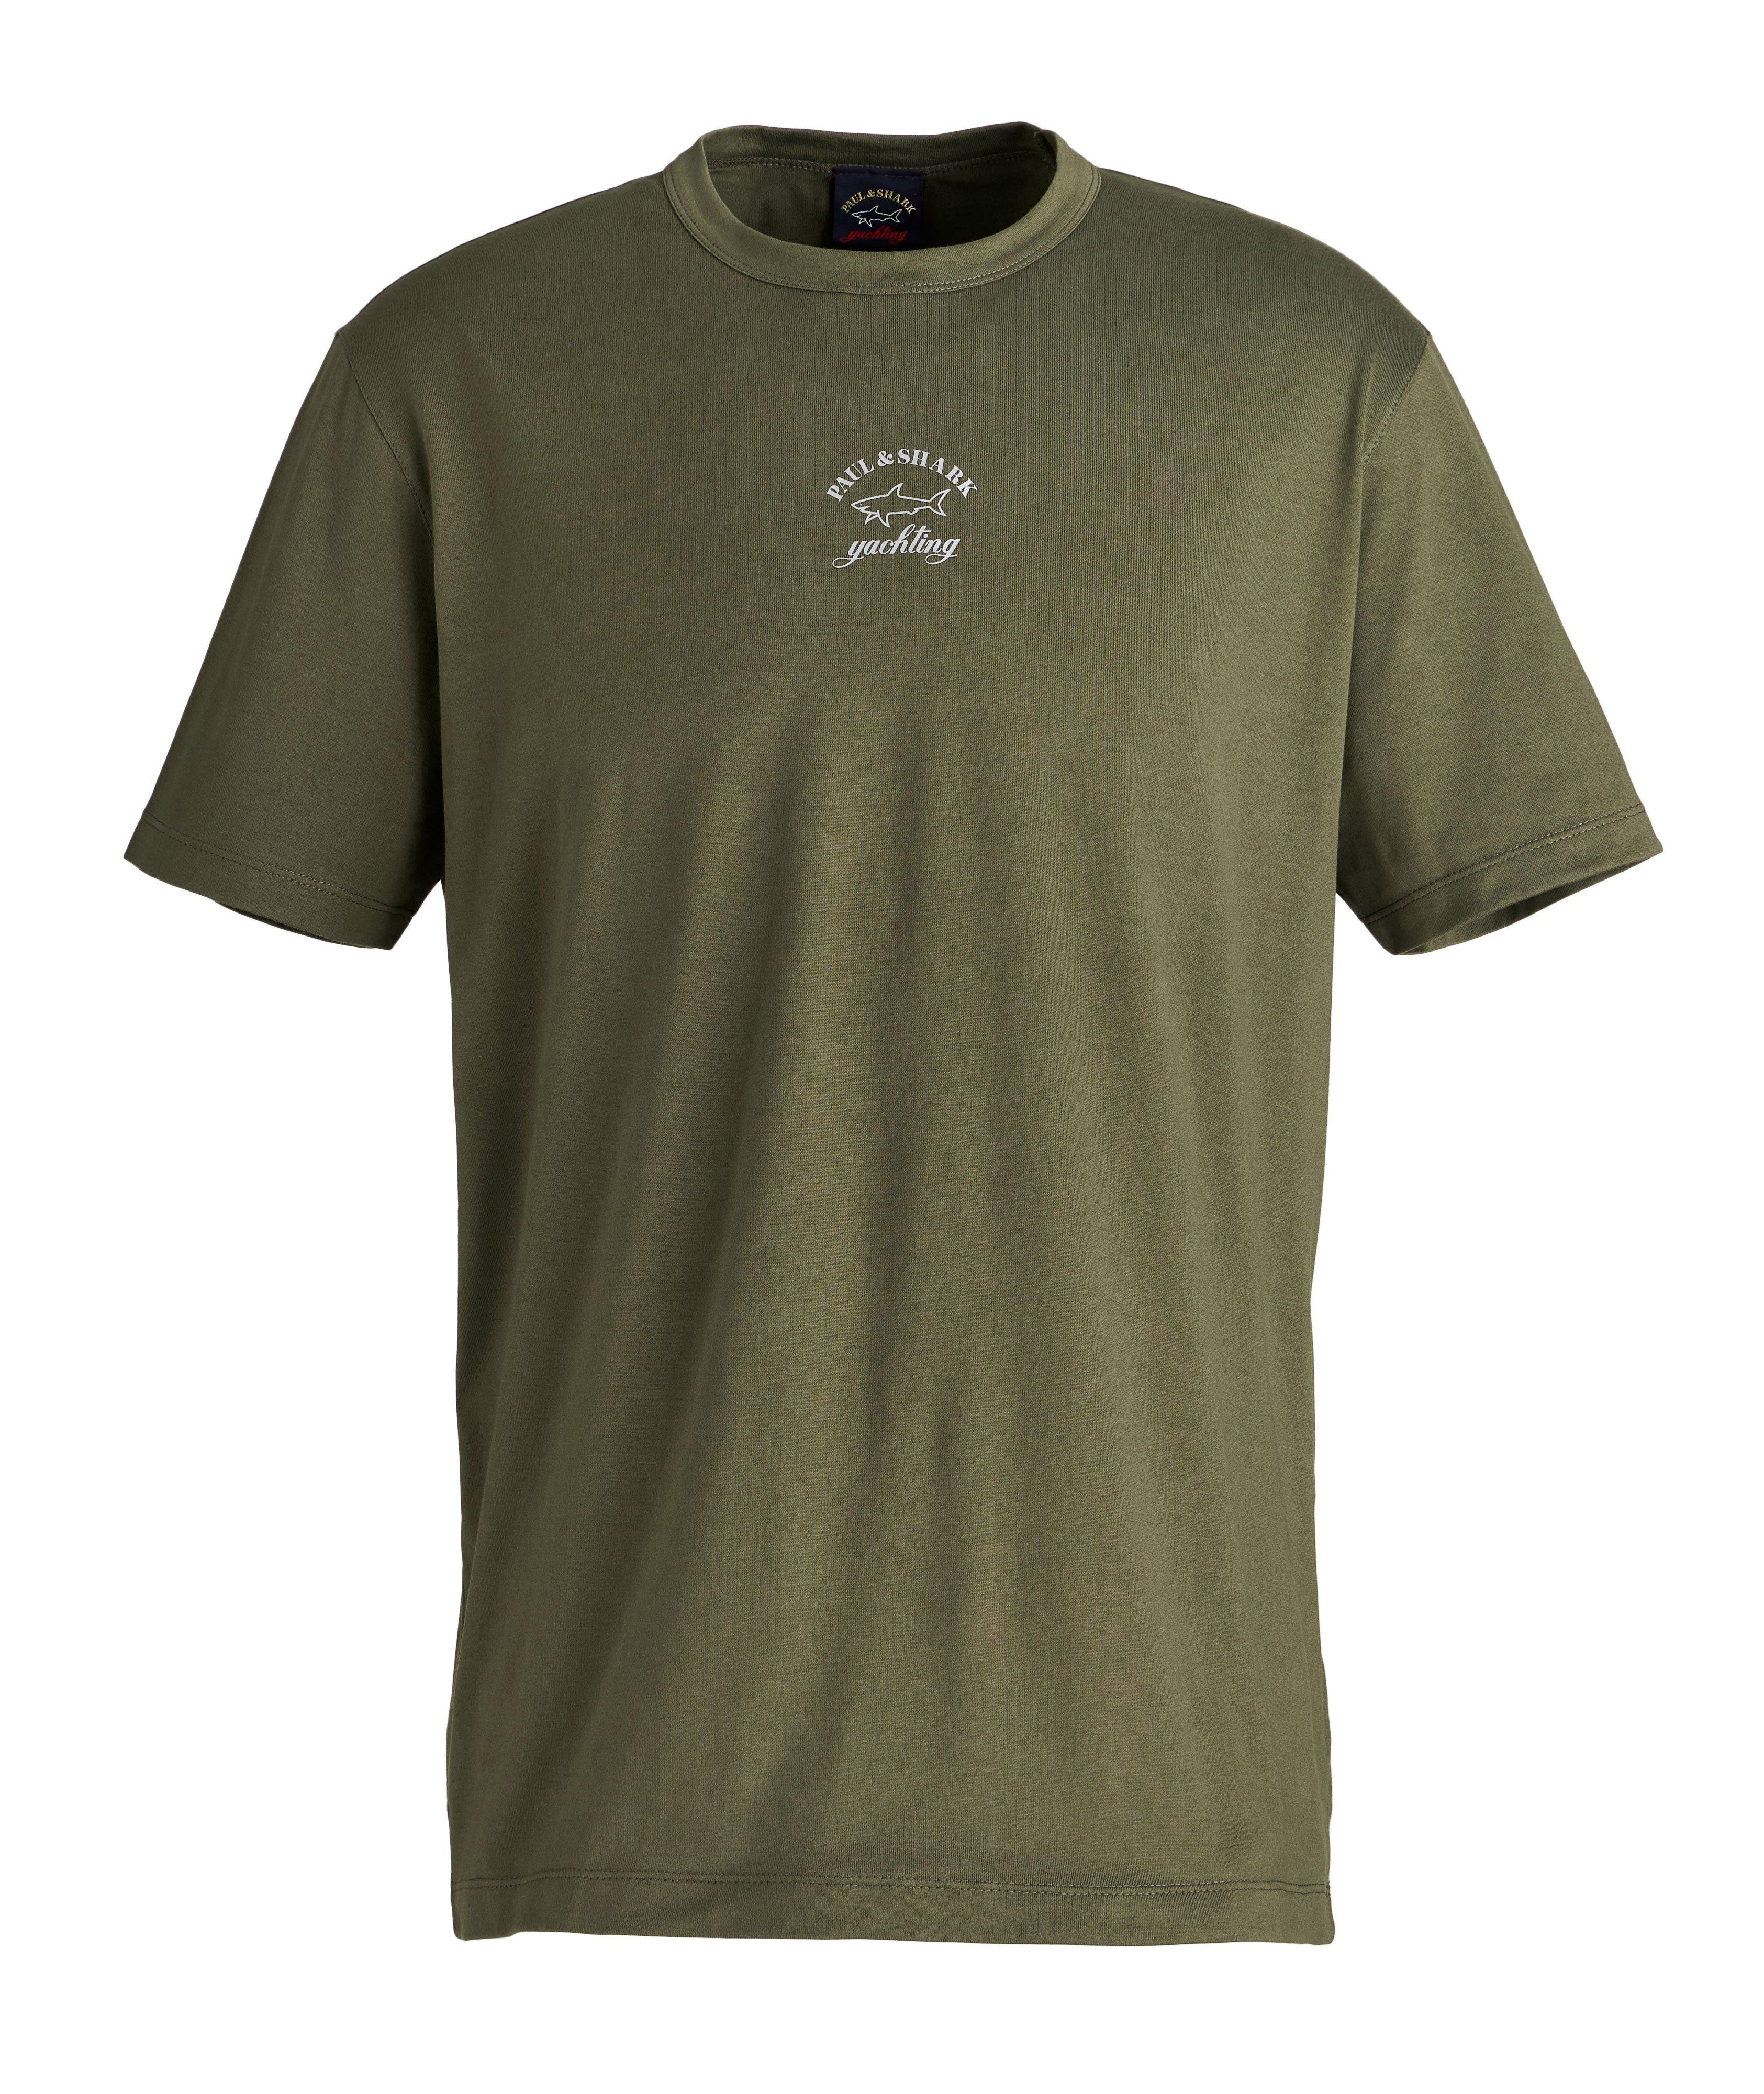 Reflex Shark Cotton T-Shirt image 0